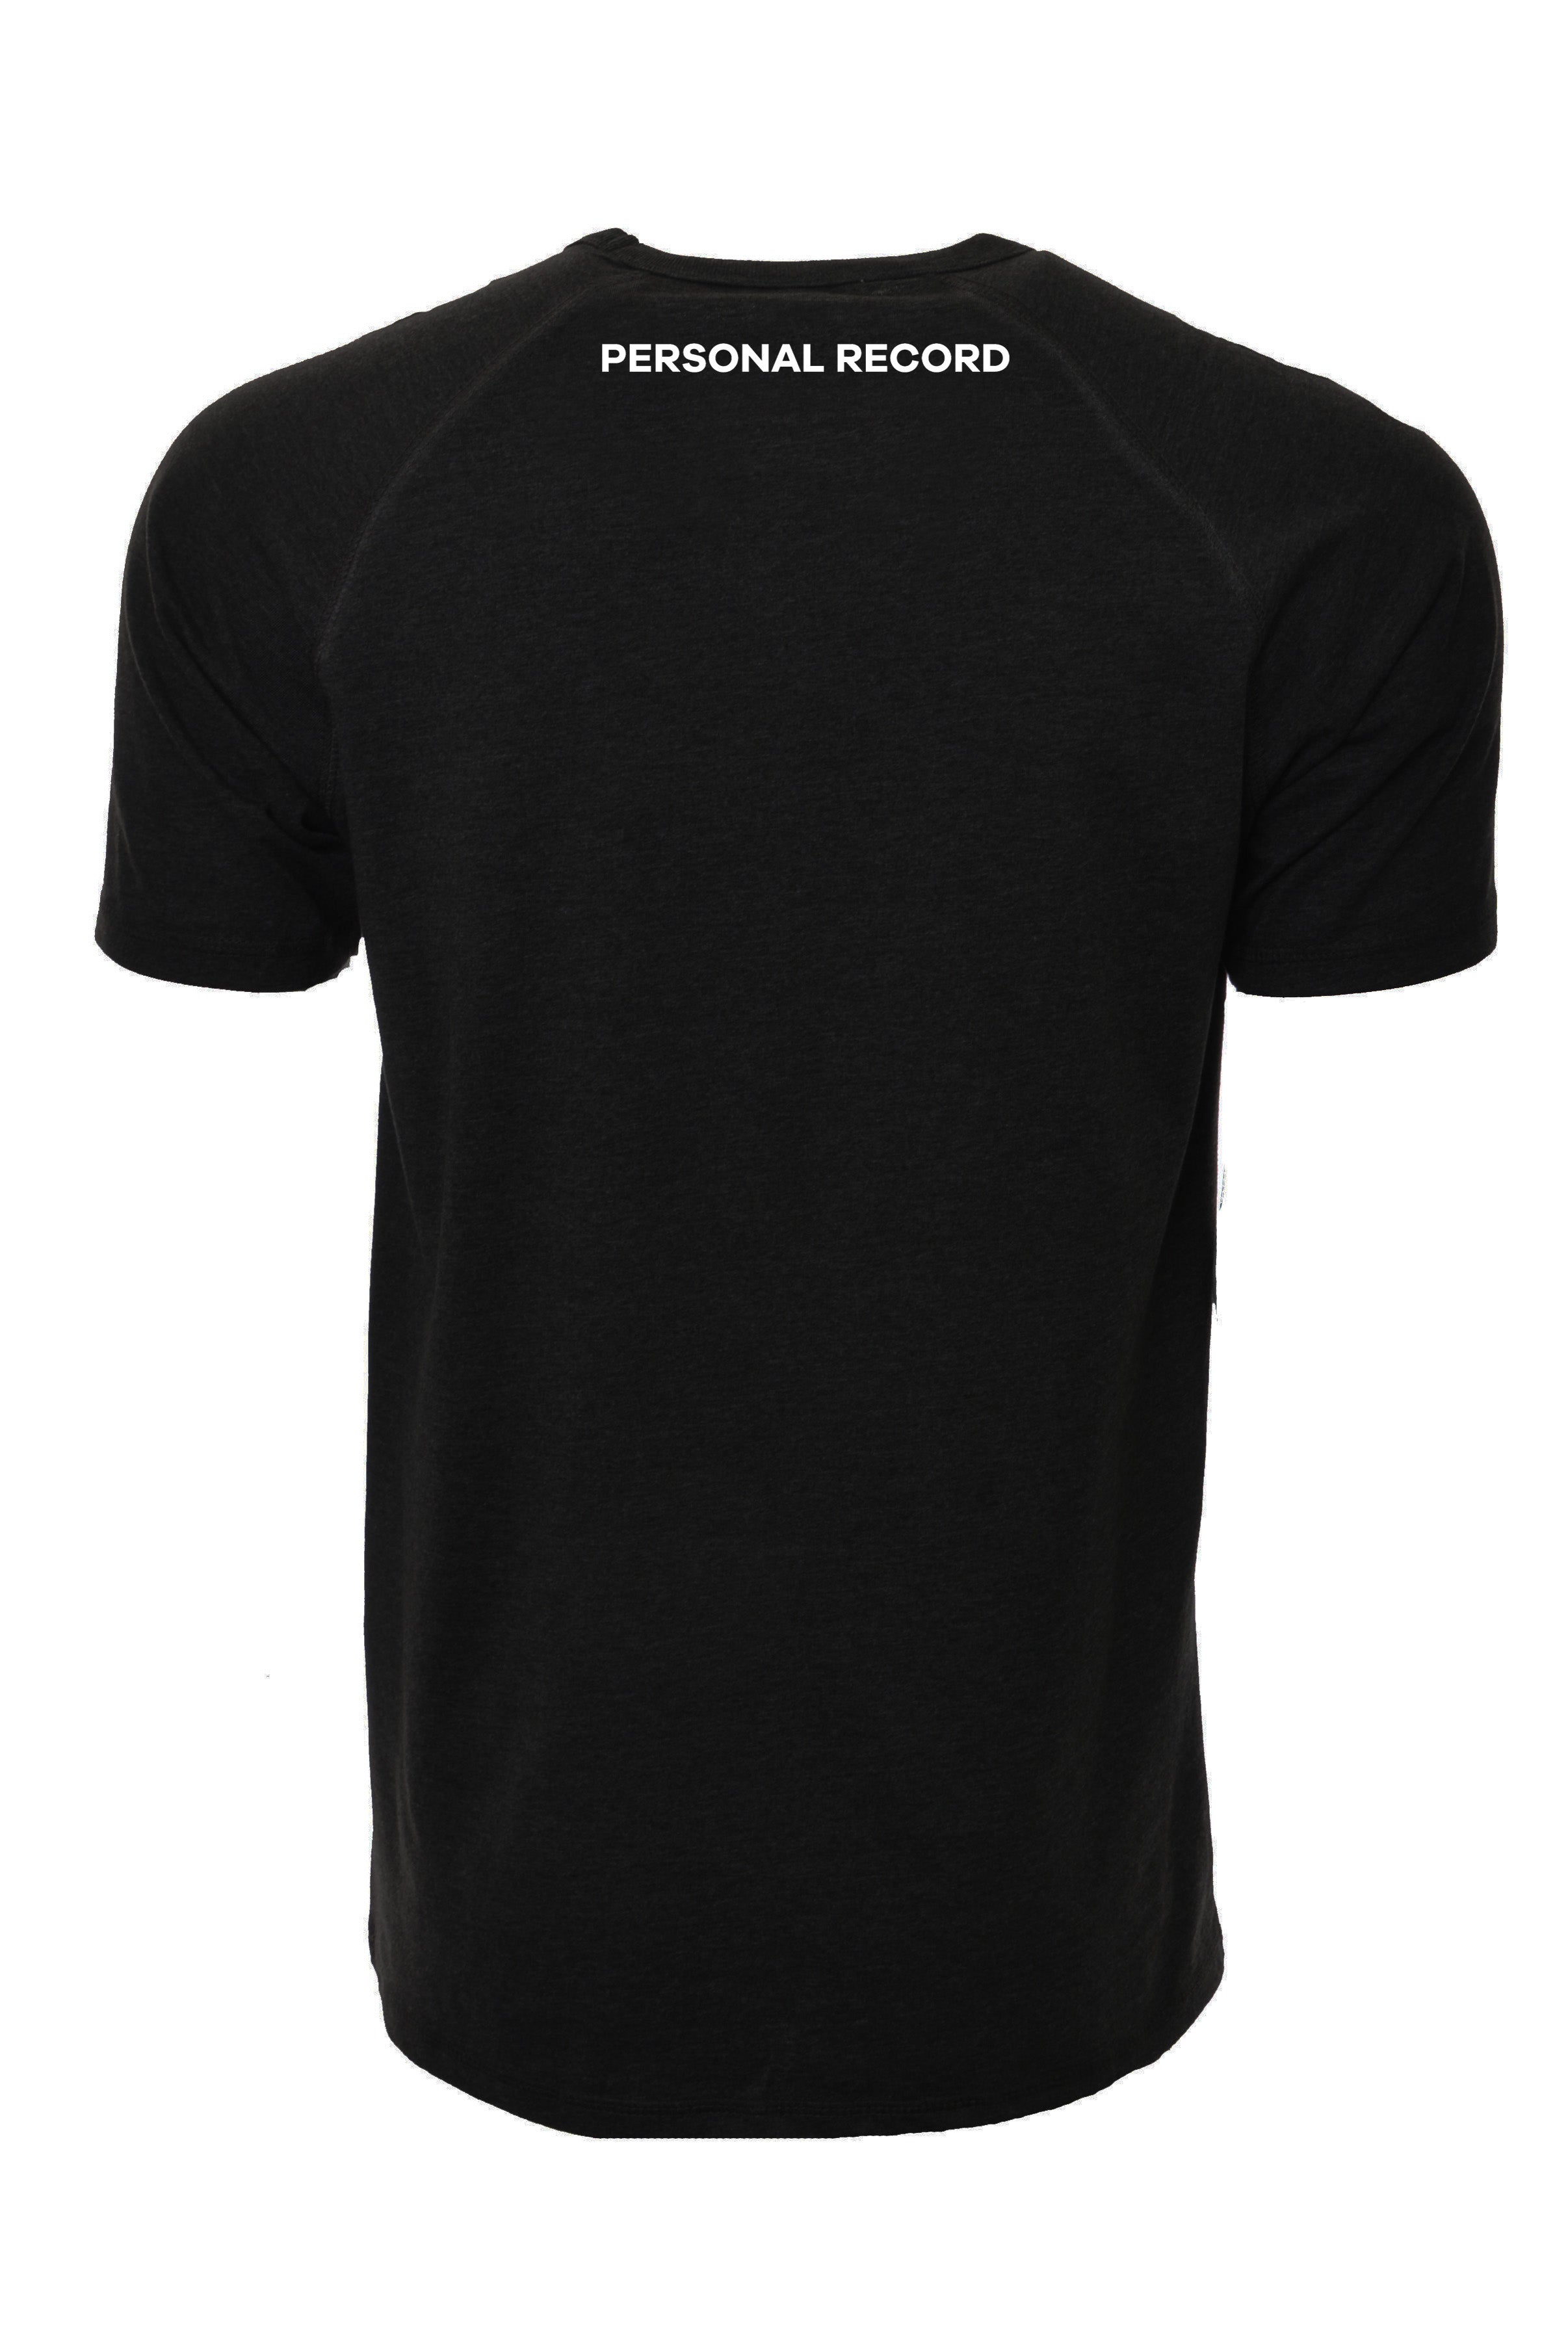 PR Raglan Tech Shirts - PR402 - Black